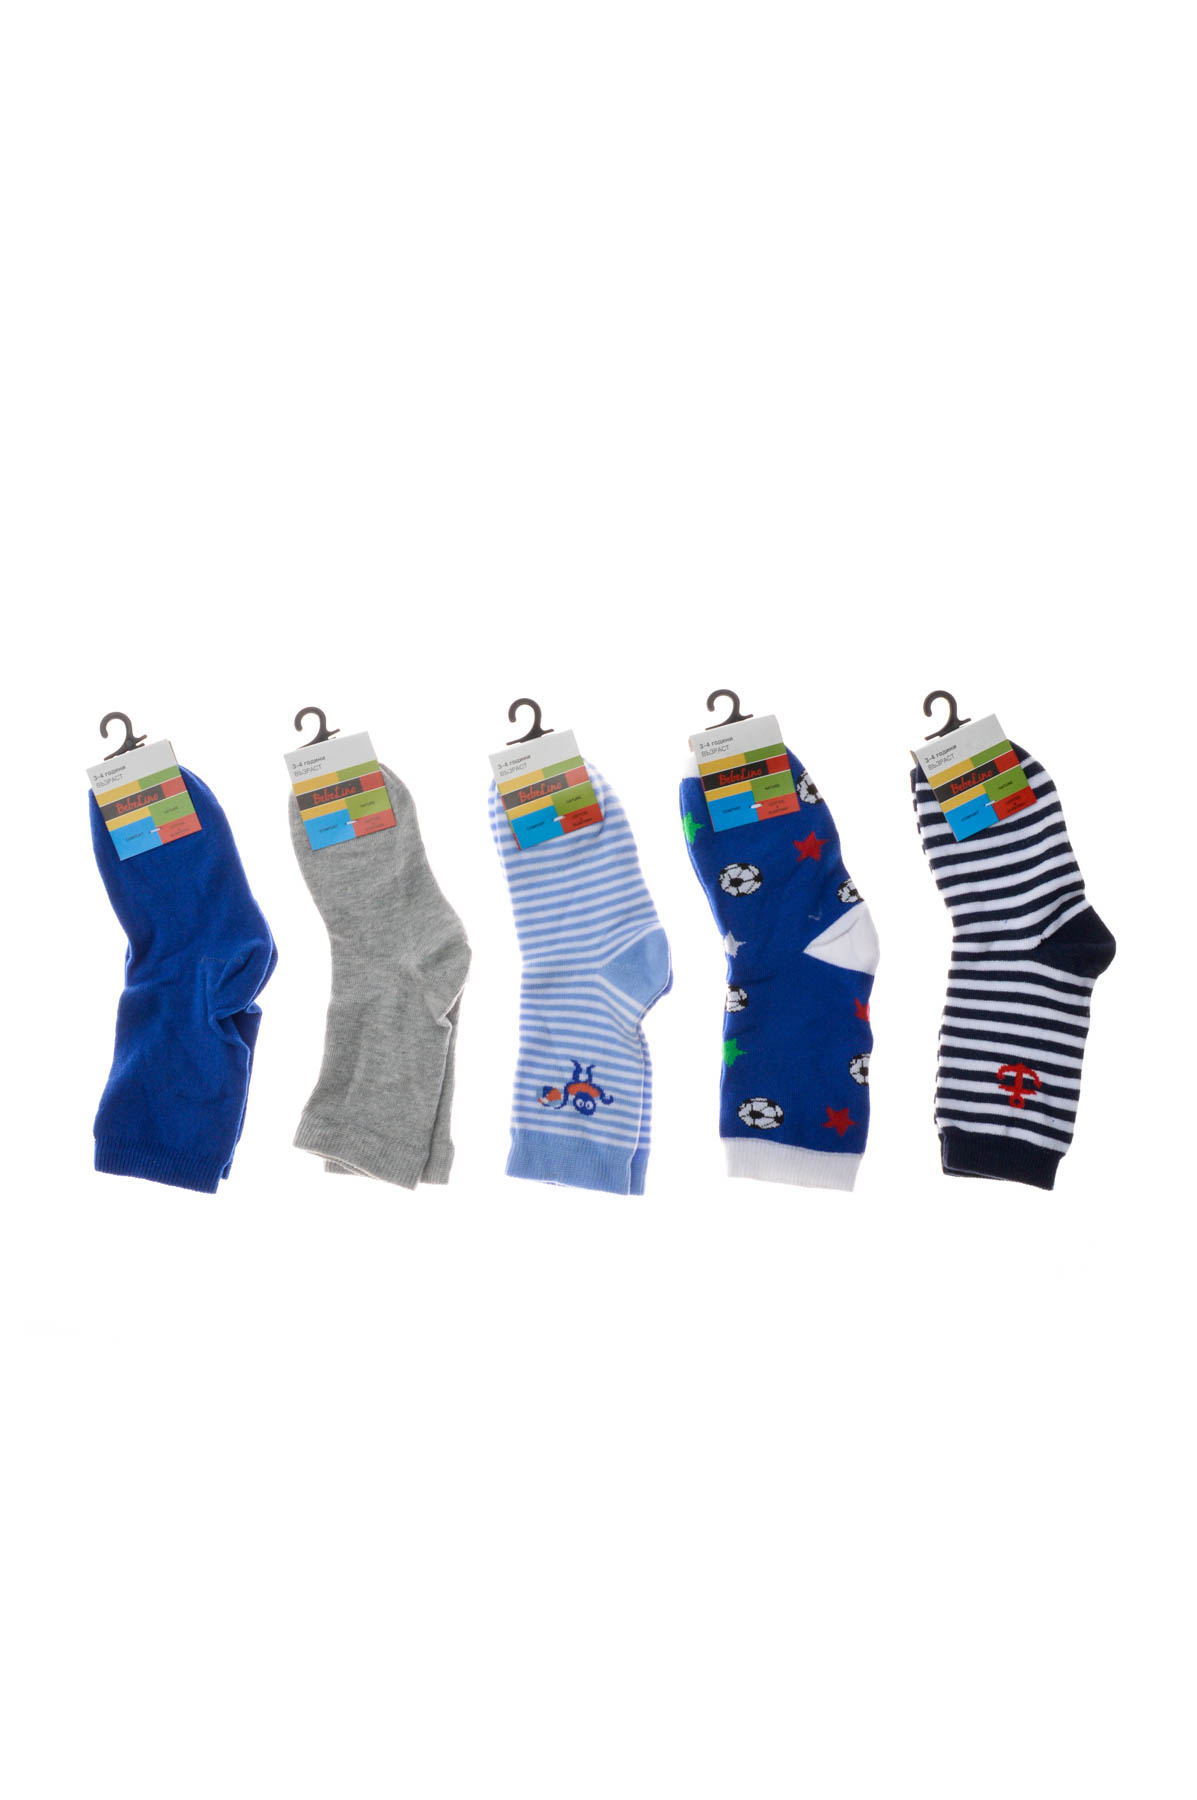 Kids' Socks 5pcs. - BebeLino - 0